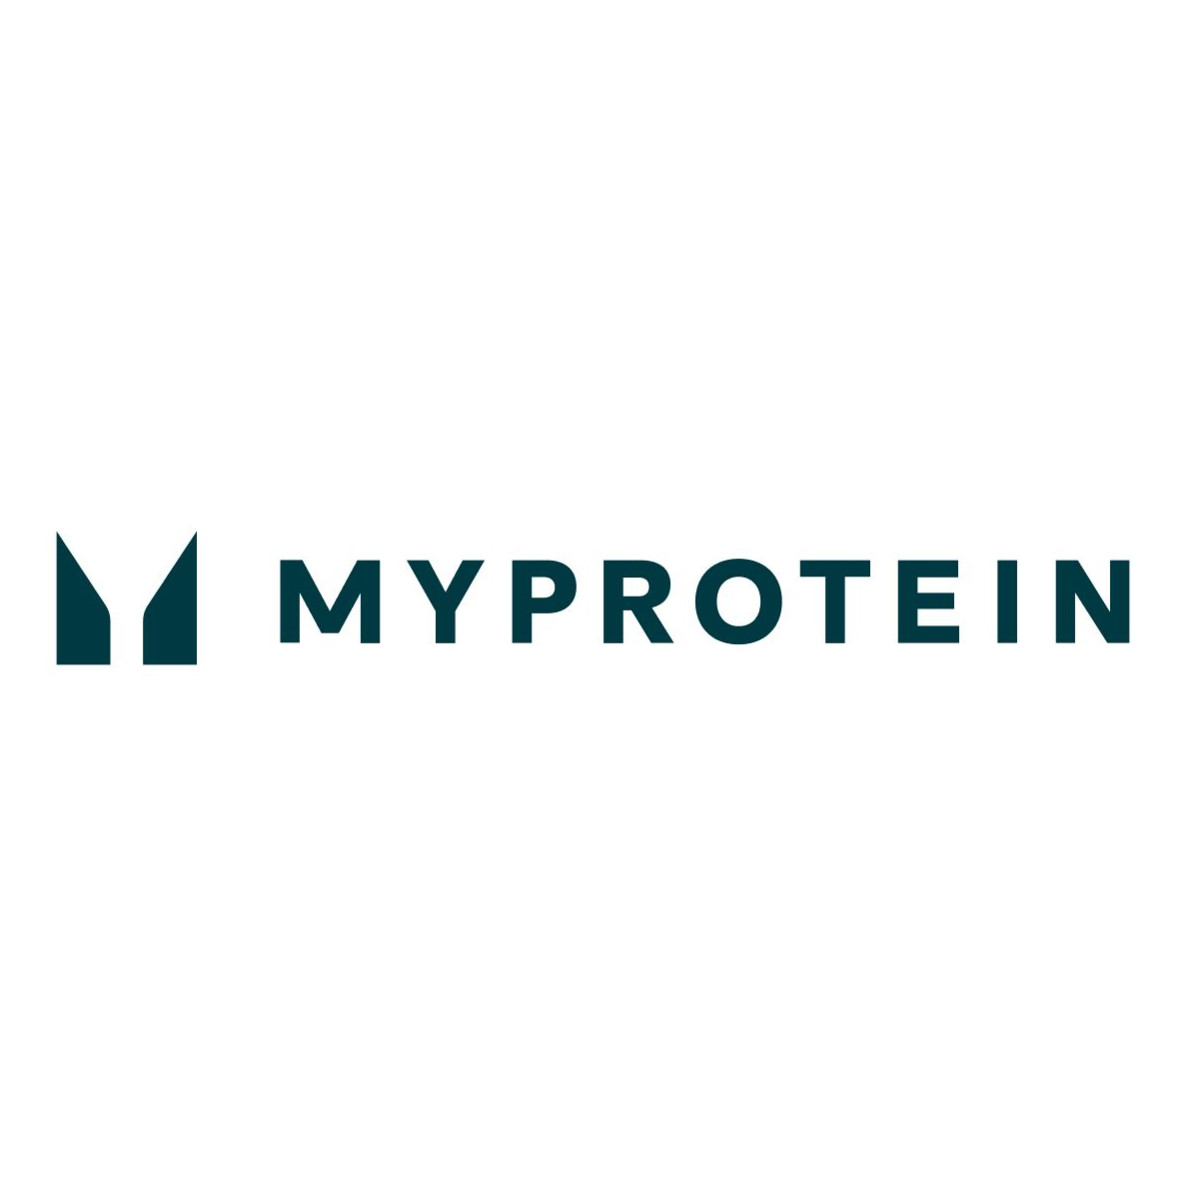 
	
		
		
		
		
		
		
			
			
			
			
				마이프로틴 할인코드 | MYPROTEIN™
				
				
				
			
		
		
		
		
		

		
		
	
